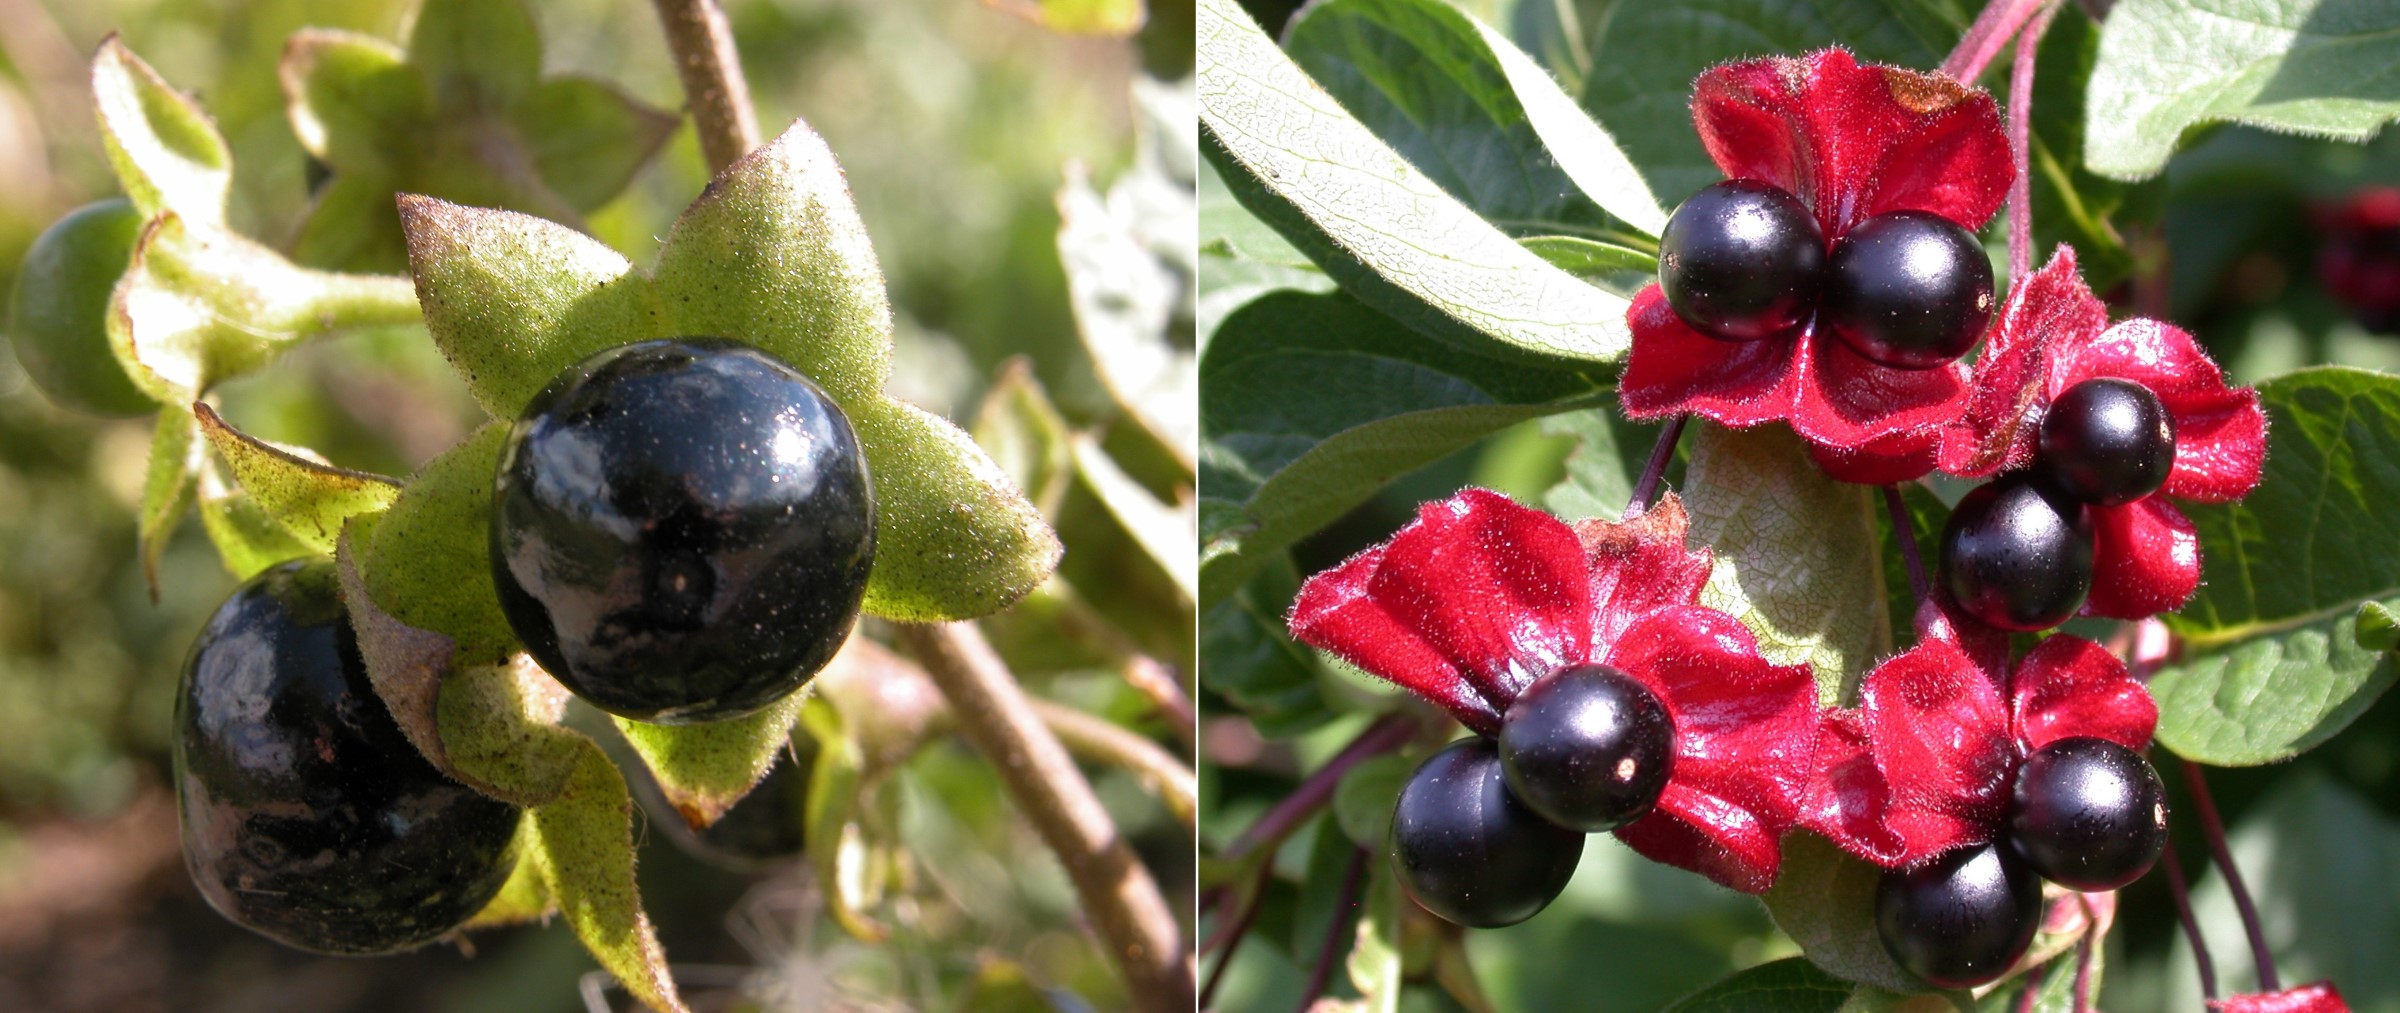 Berries of belladonna